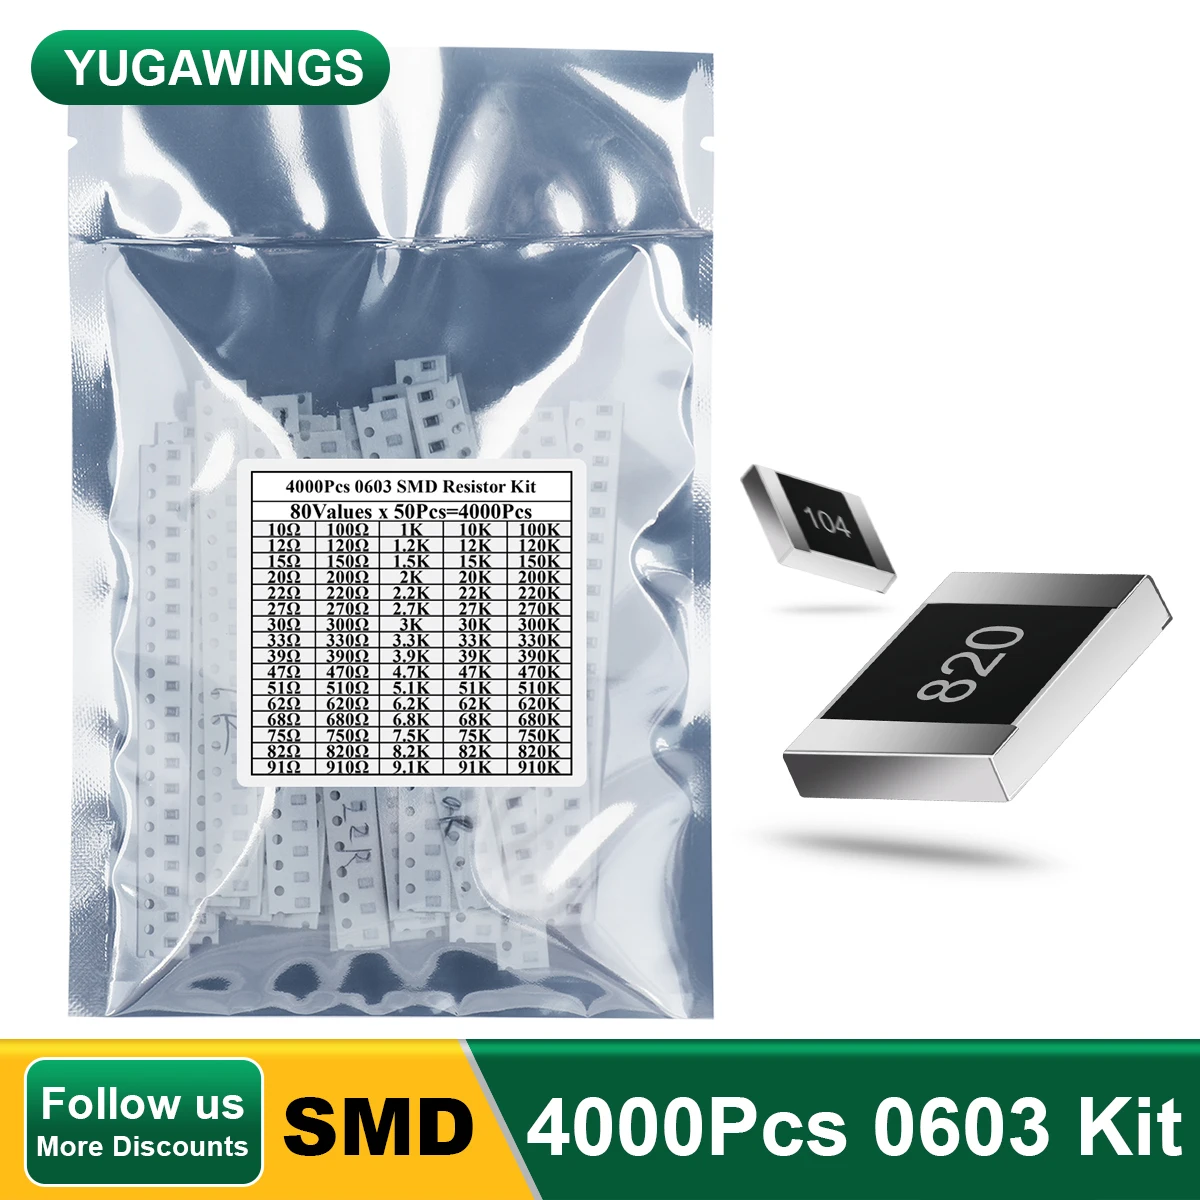 

4000Pcs 0603 Resistor Kit 10R-910K (80Values x 40Pcs=4000Pcs) Watt 1% High Precision Film Chip Resistance Kit SMD Resistors Set